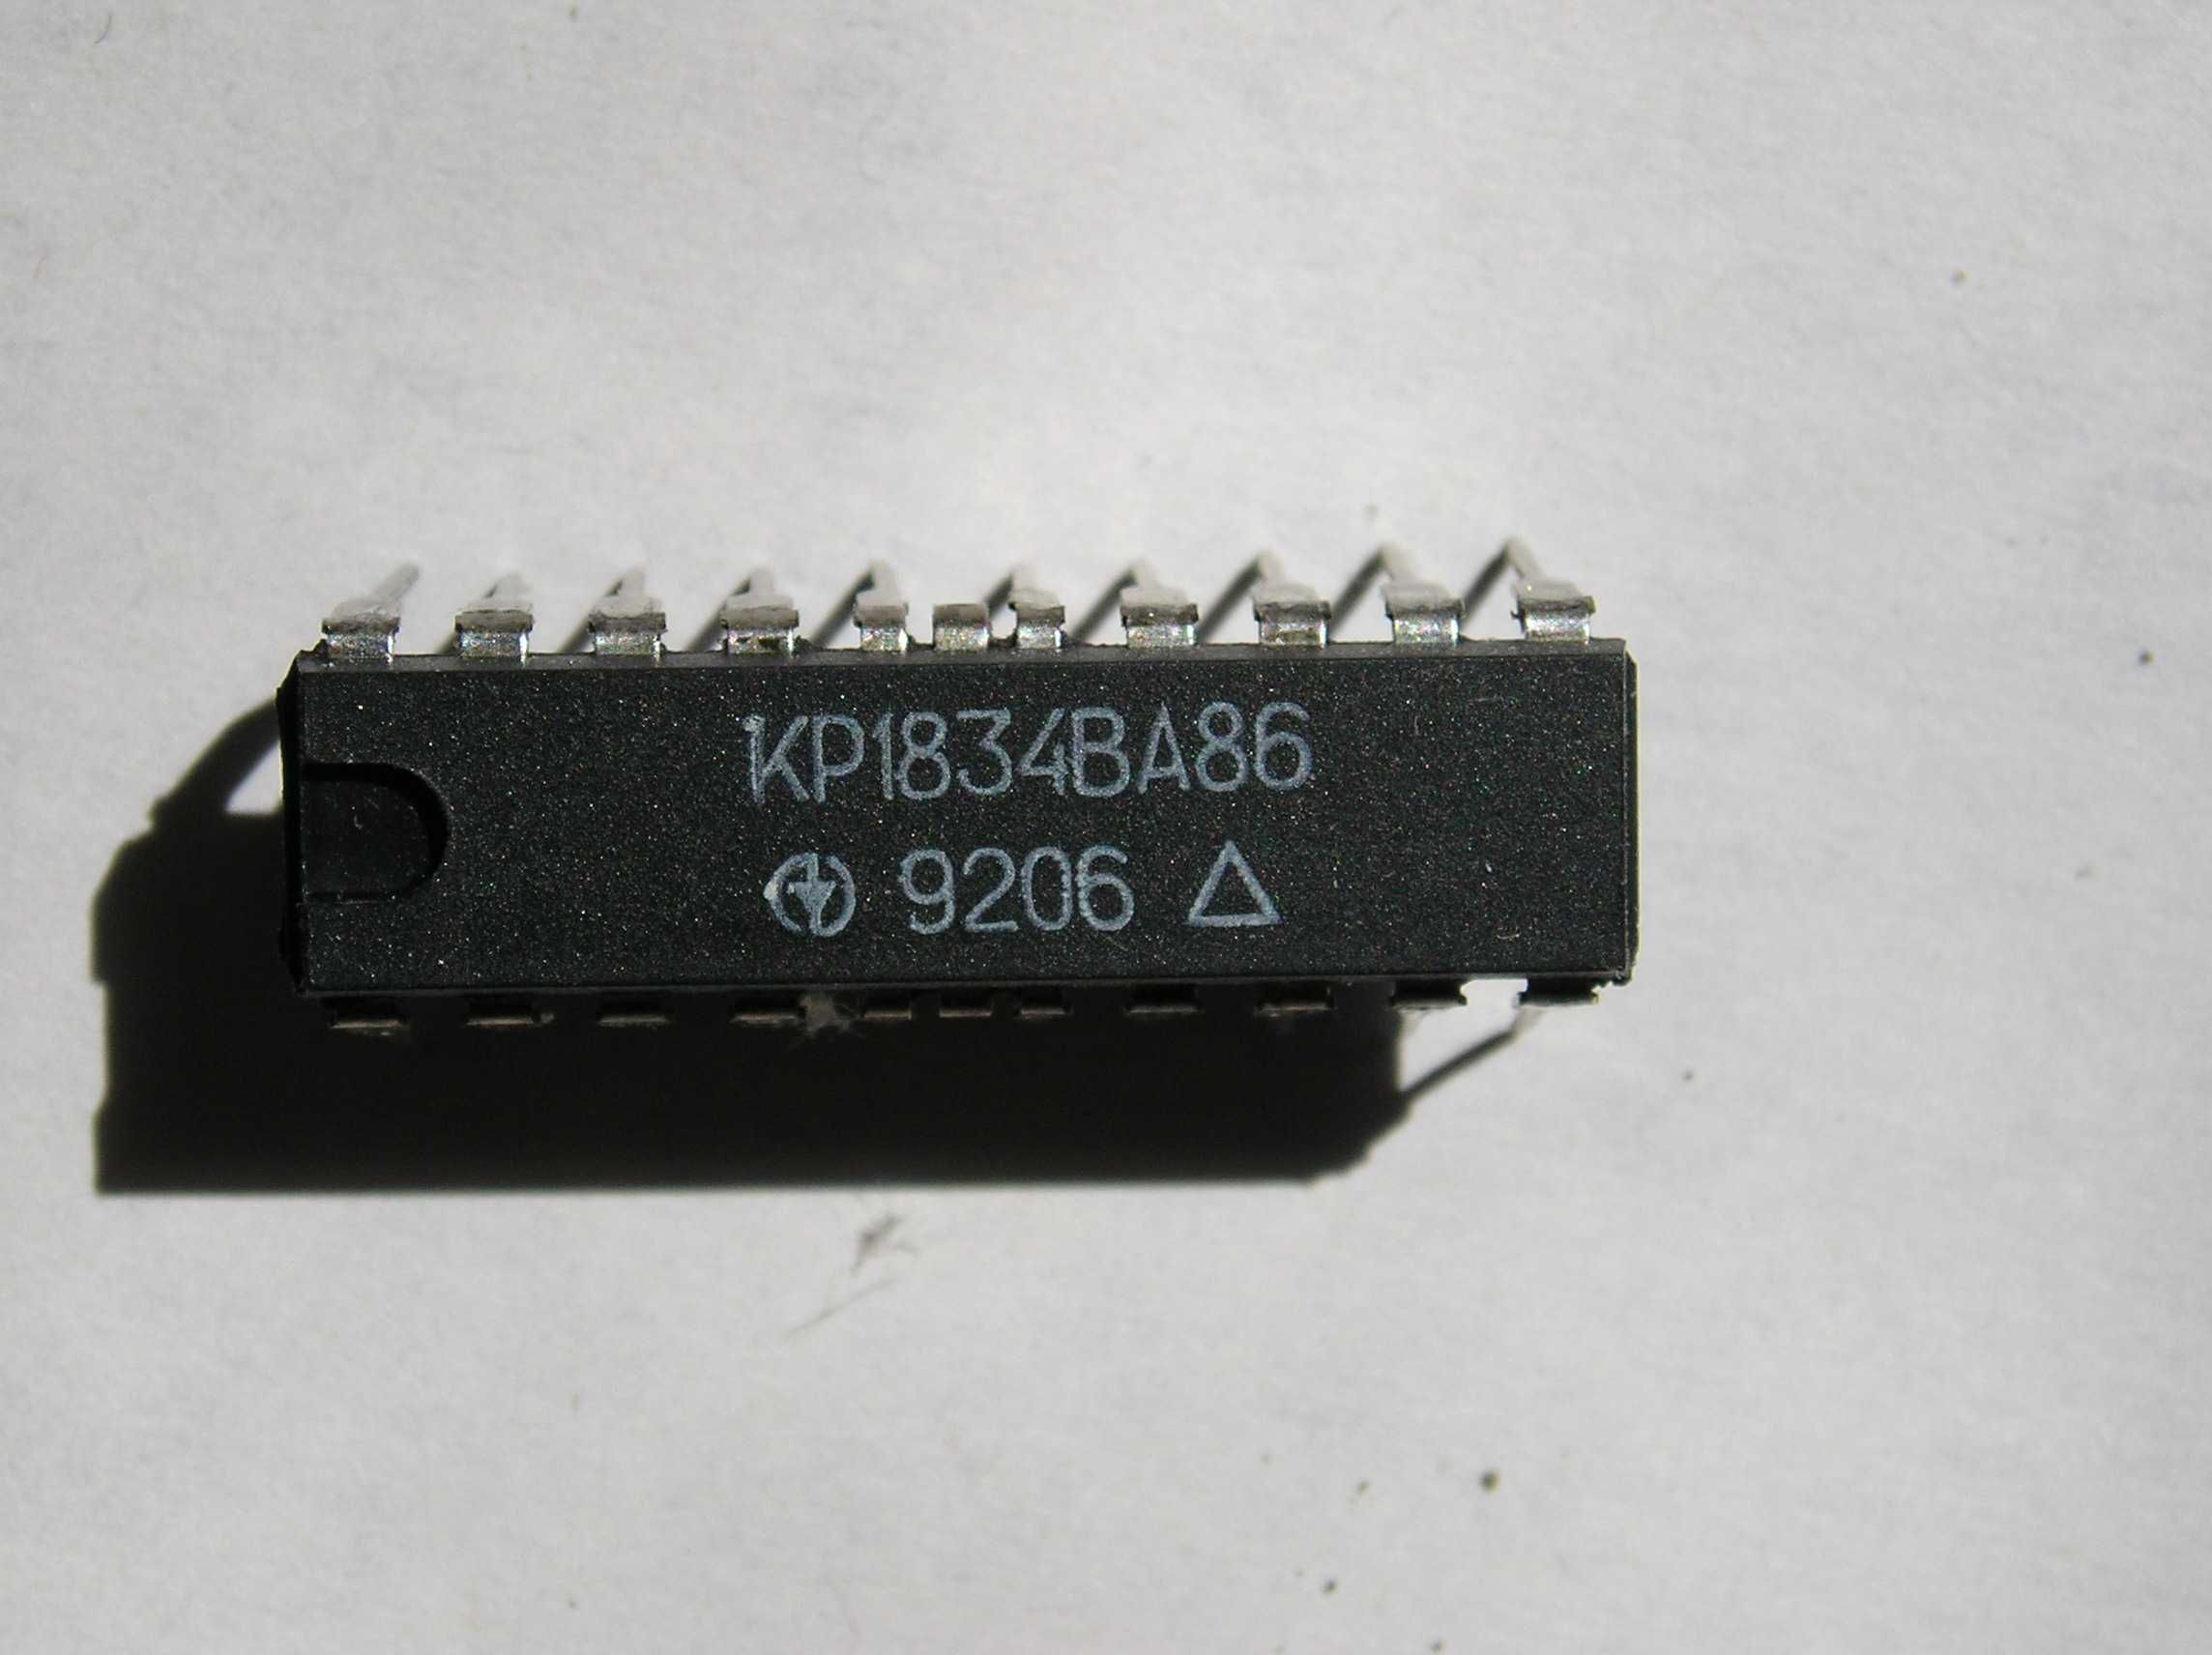 Микросхема КР1834ВА86 - двунаправленный шинный формирователь.